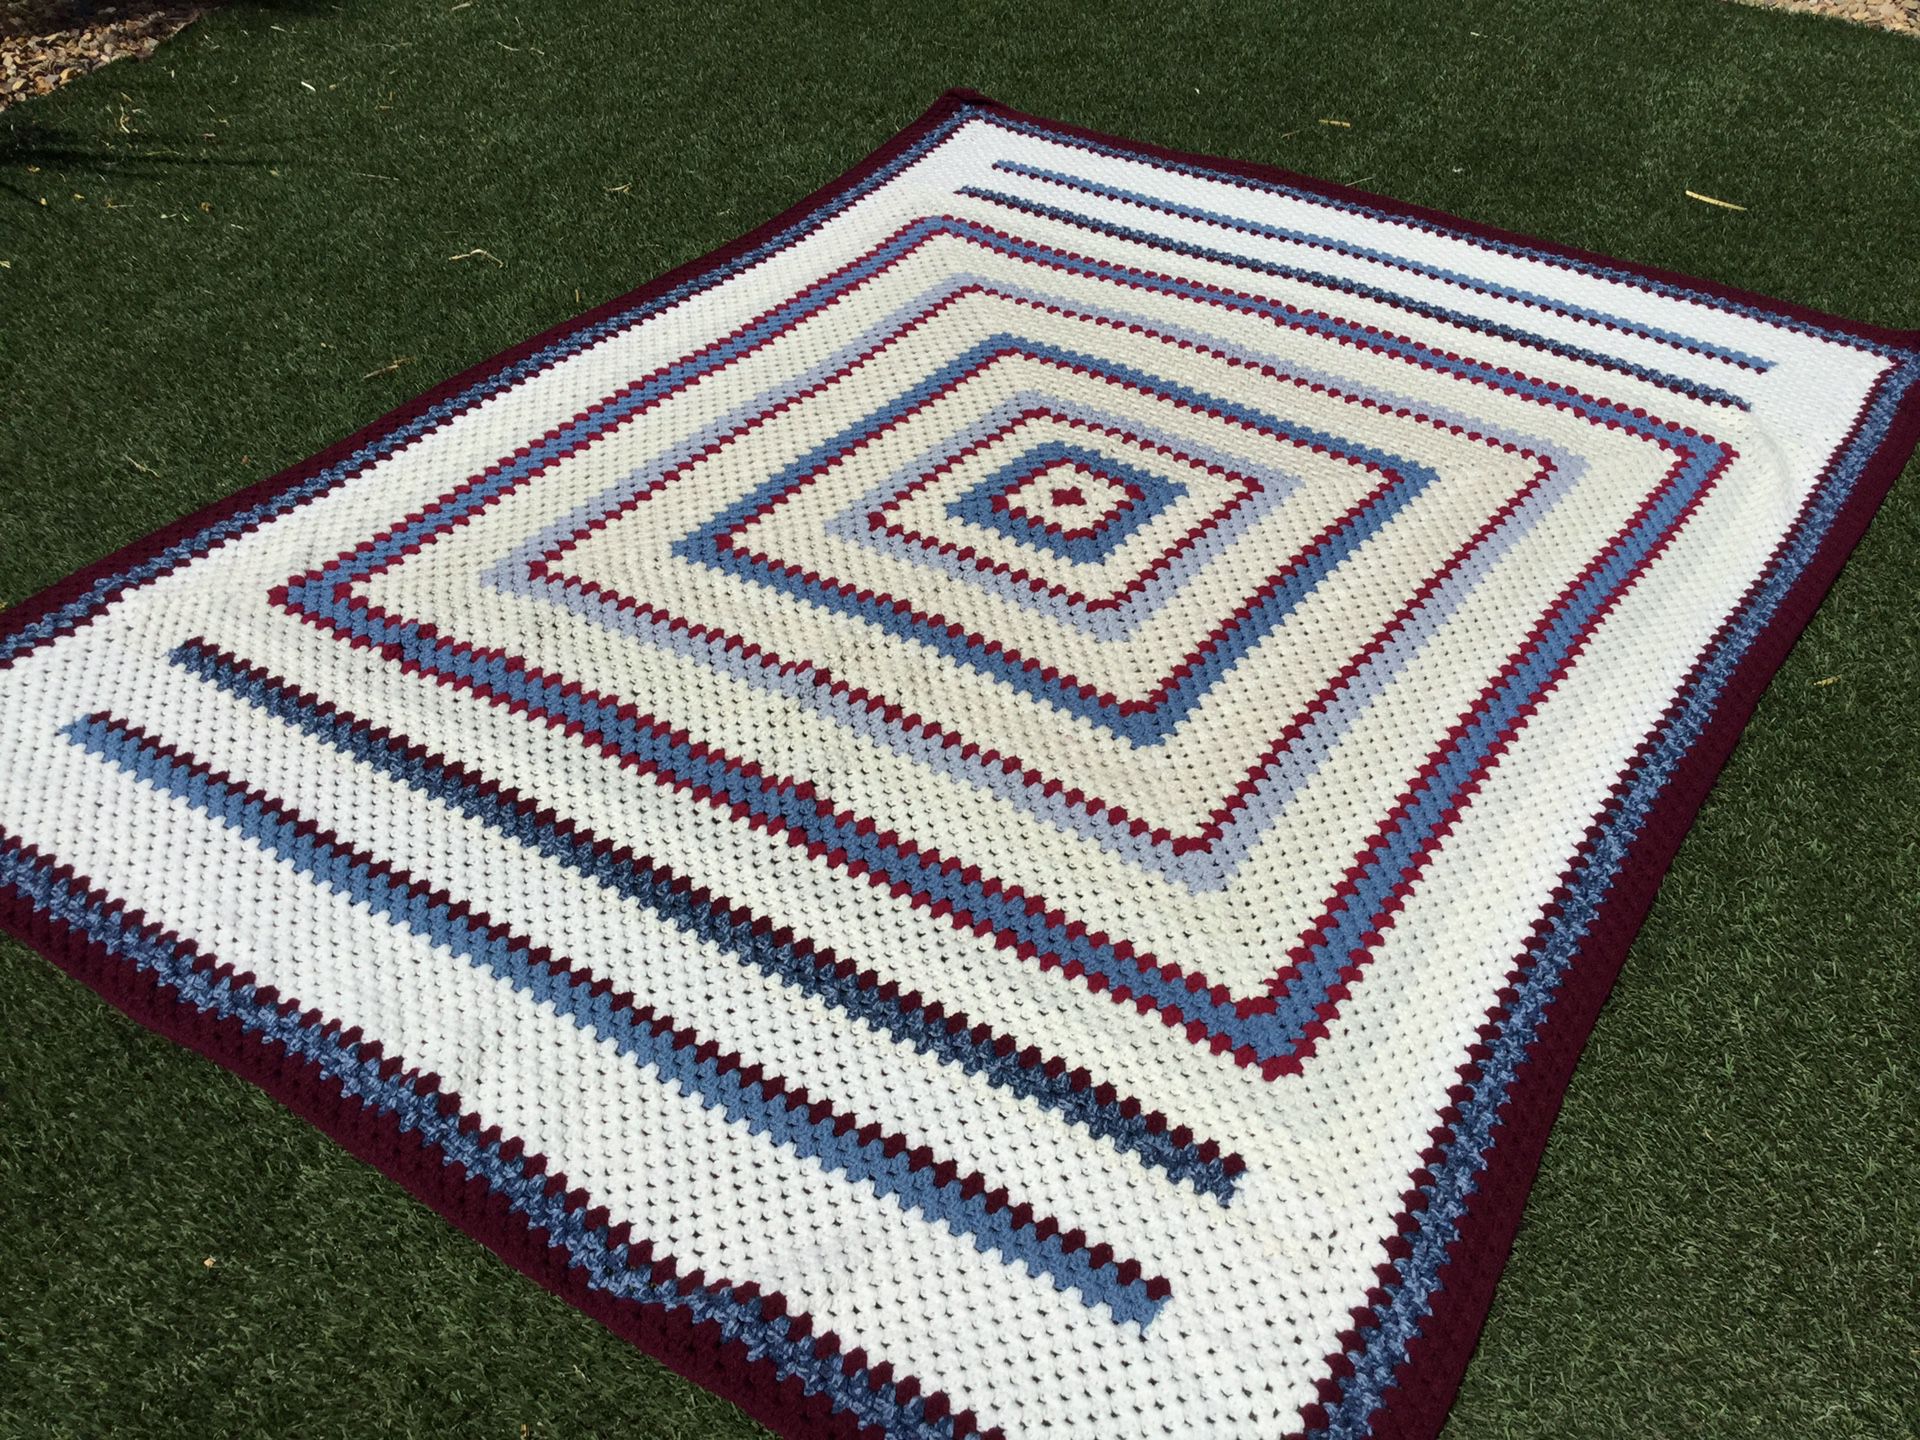 Handmade Crochet Cotton Afghan Throw Blanket 60” X 60” Multi Color Blue Crochet Blanket